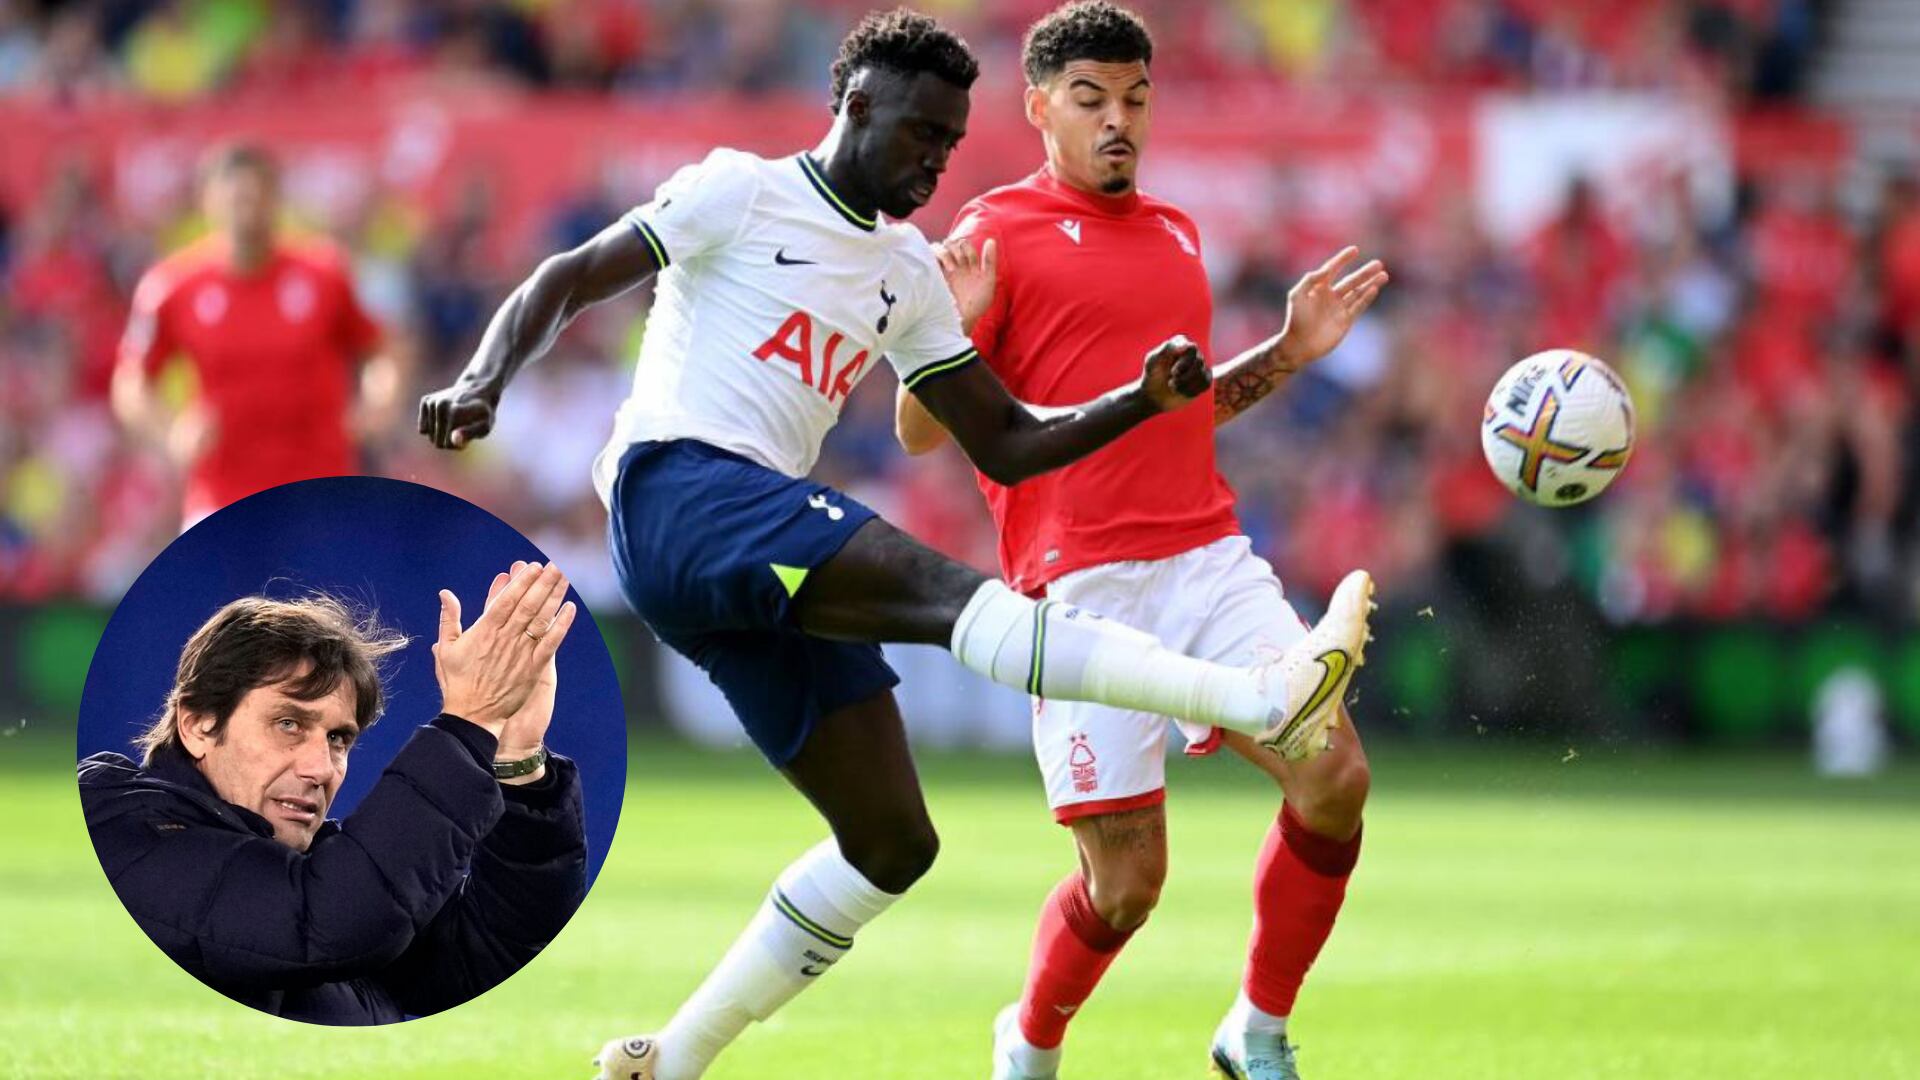 El colombiano Davinson Sánchez fue elogiado por su entrenador Antonio Conte tras sus buenas presentaciones con el Tottenham en Premier League. Imagen: Getty Images.